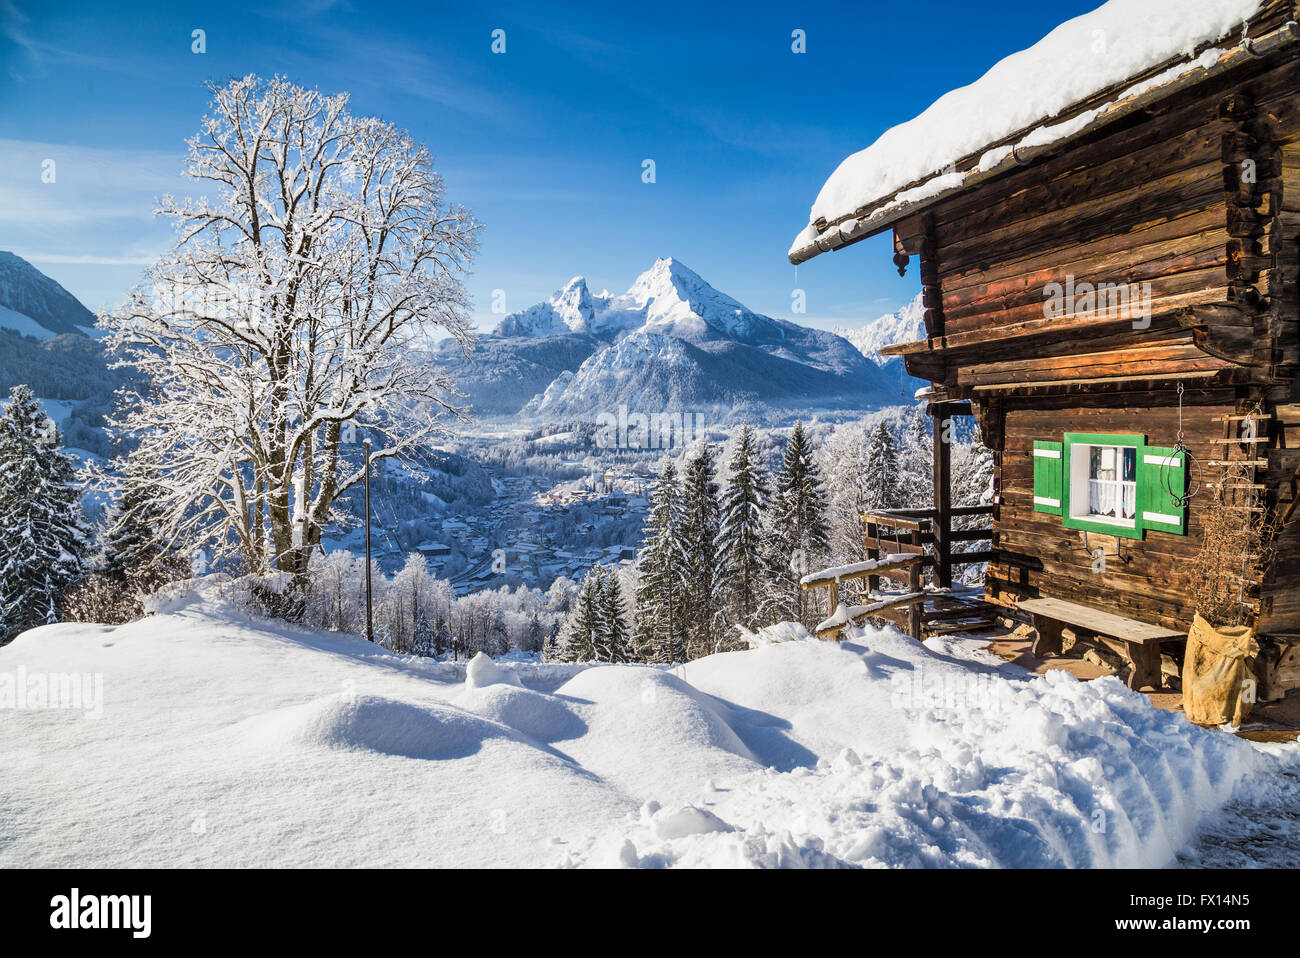 El país de las maravillas de invierno en los Alpes con chalet tradicional de montaña Foto de stock